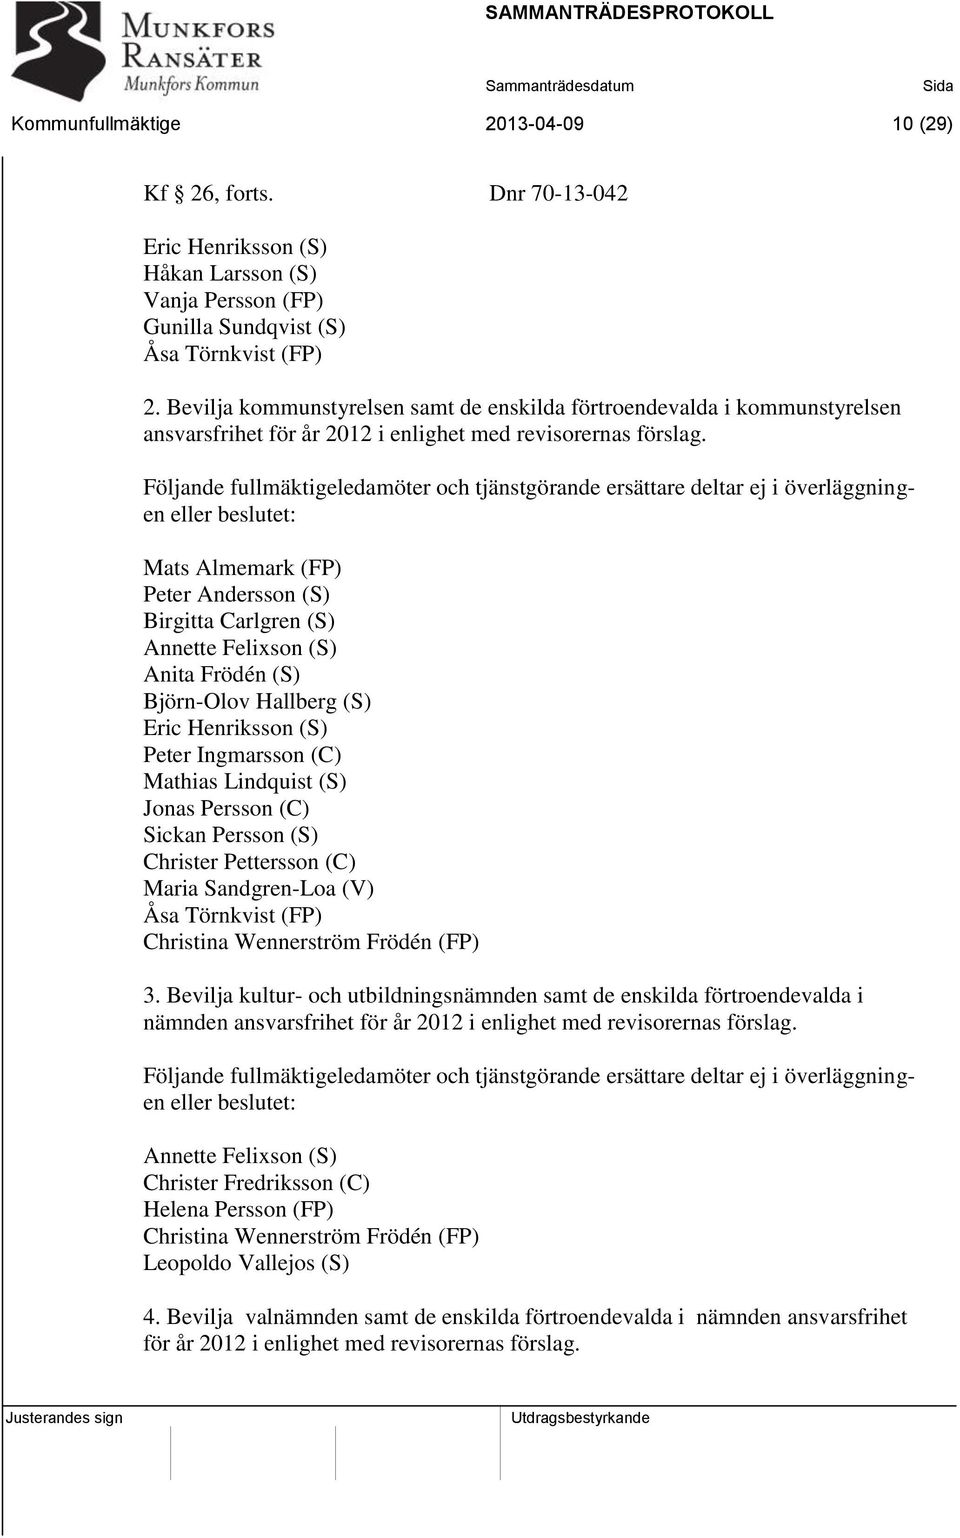 Följande fullmäktigeledamöter och tjänstgörande ersättare deltar ej i överläggningen eller beslutet: Mats Almemark (FP) Peter Andersson (S) Birgitta Carlgren (S) Annette Felixson (S) Anita Frödén (S)